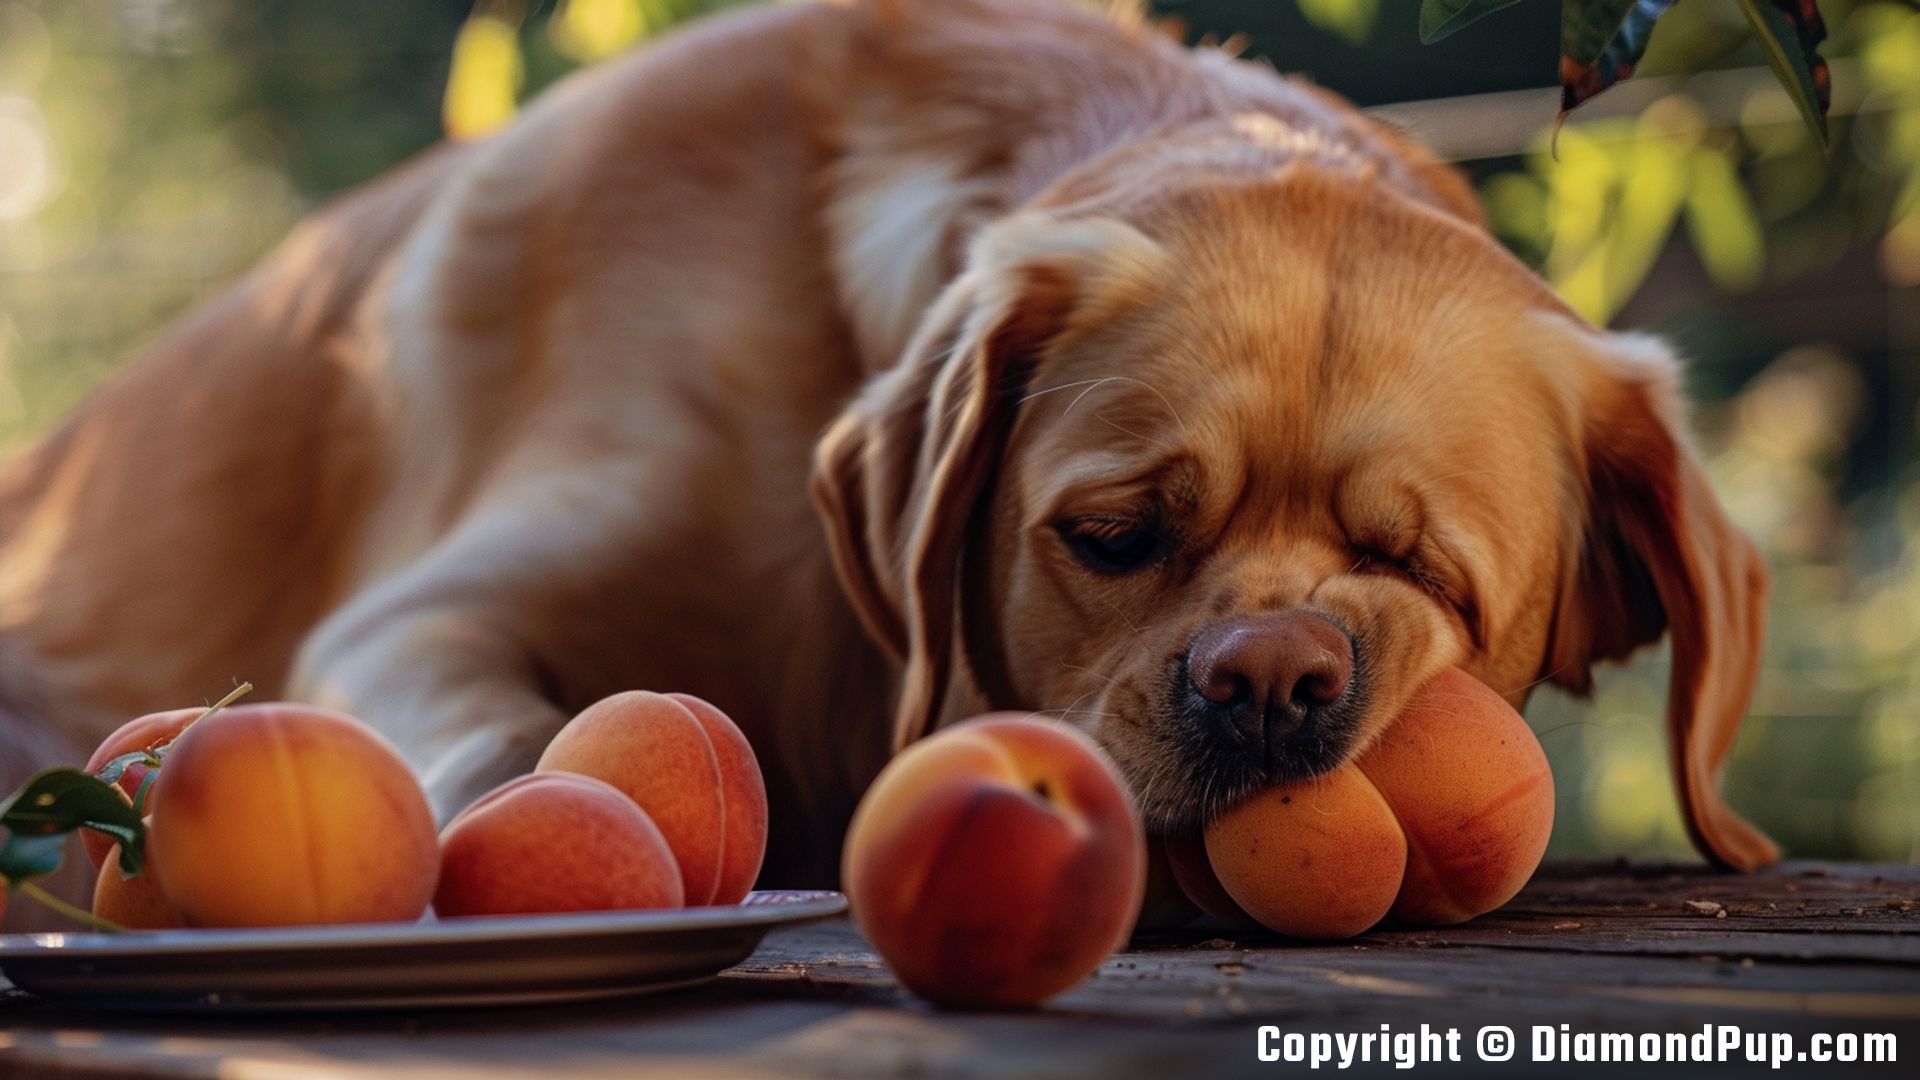 Photograph of an Adorable Labrador Snacking on Peaches